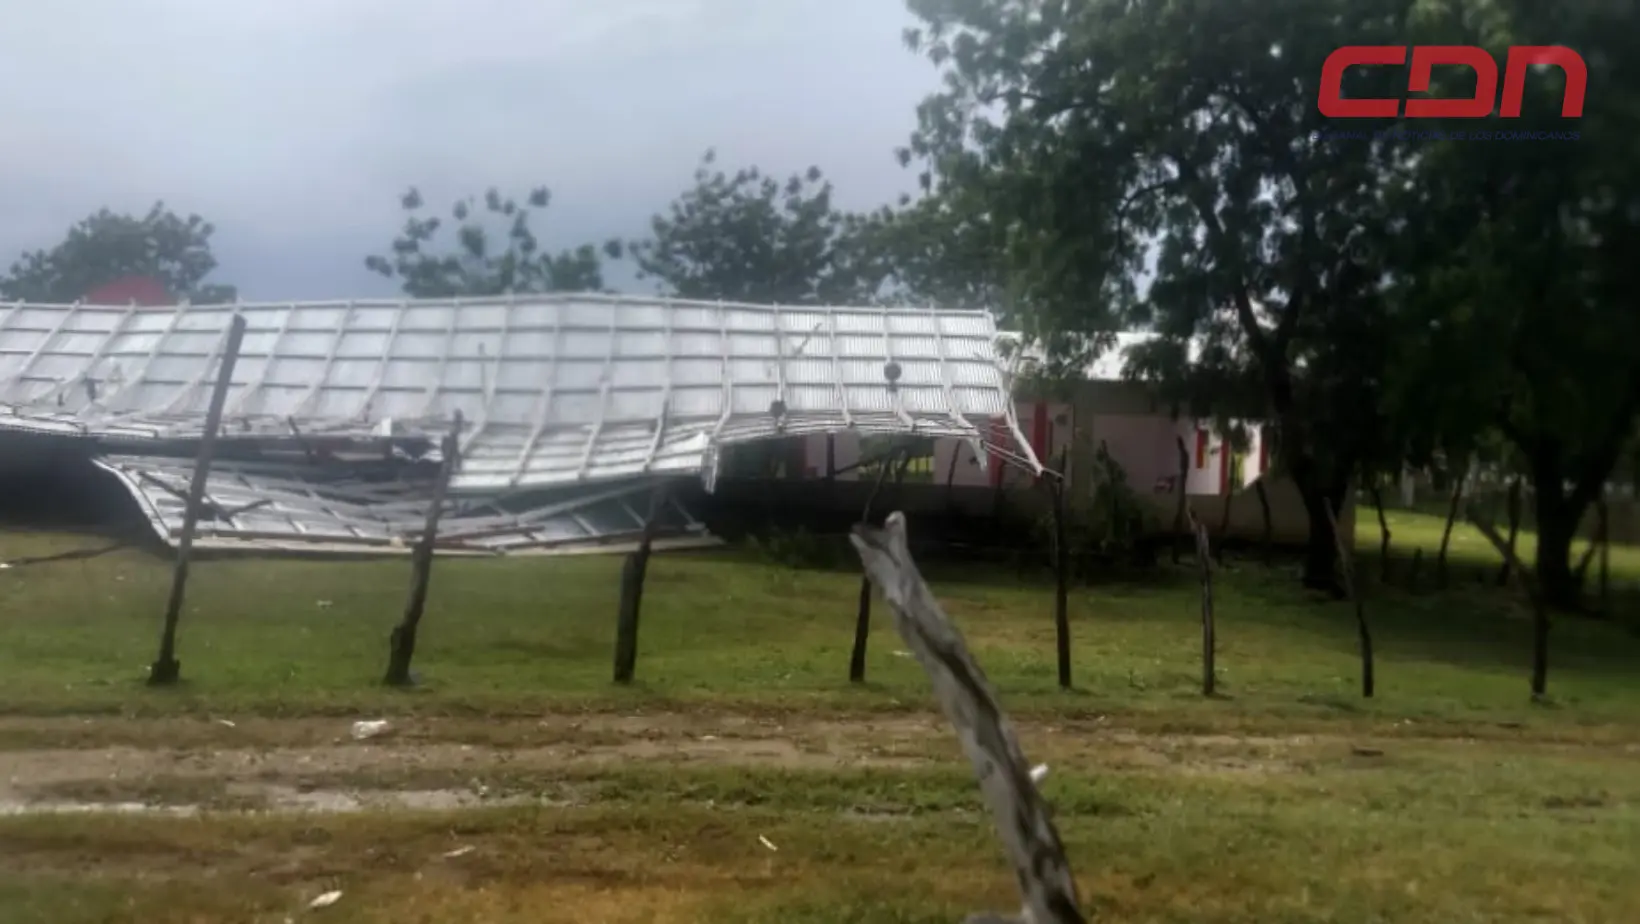 Árboles, postes del tendido eléctricos y vallas publicitarias caídos por fuerte tornado.